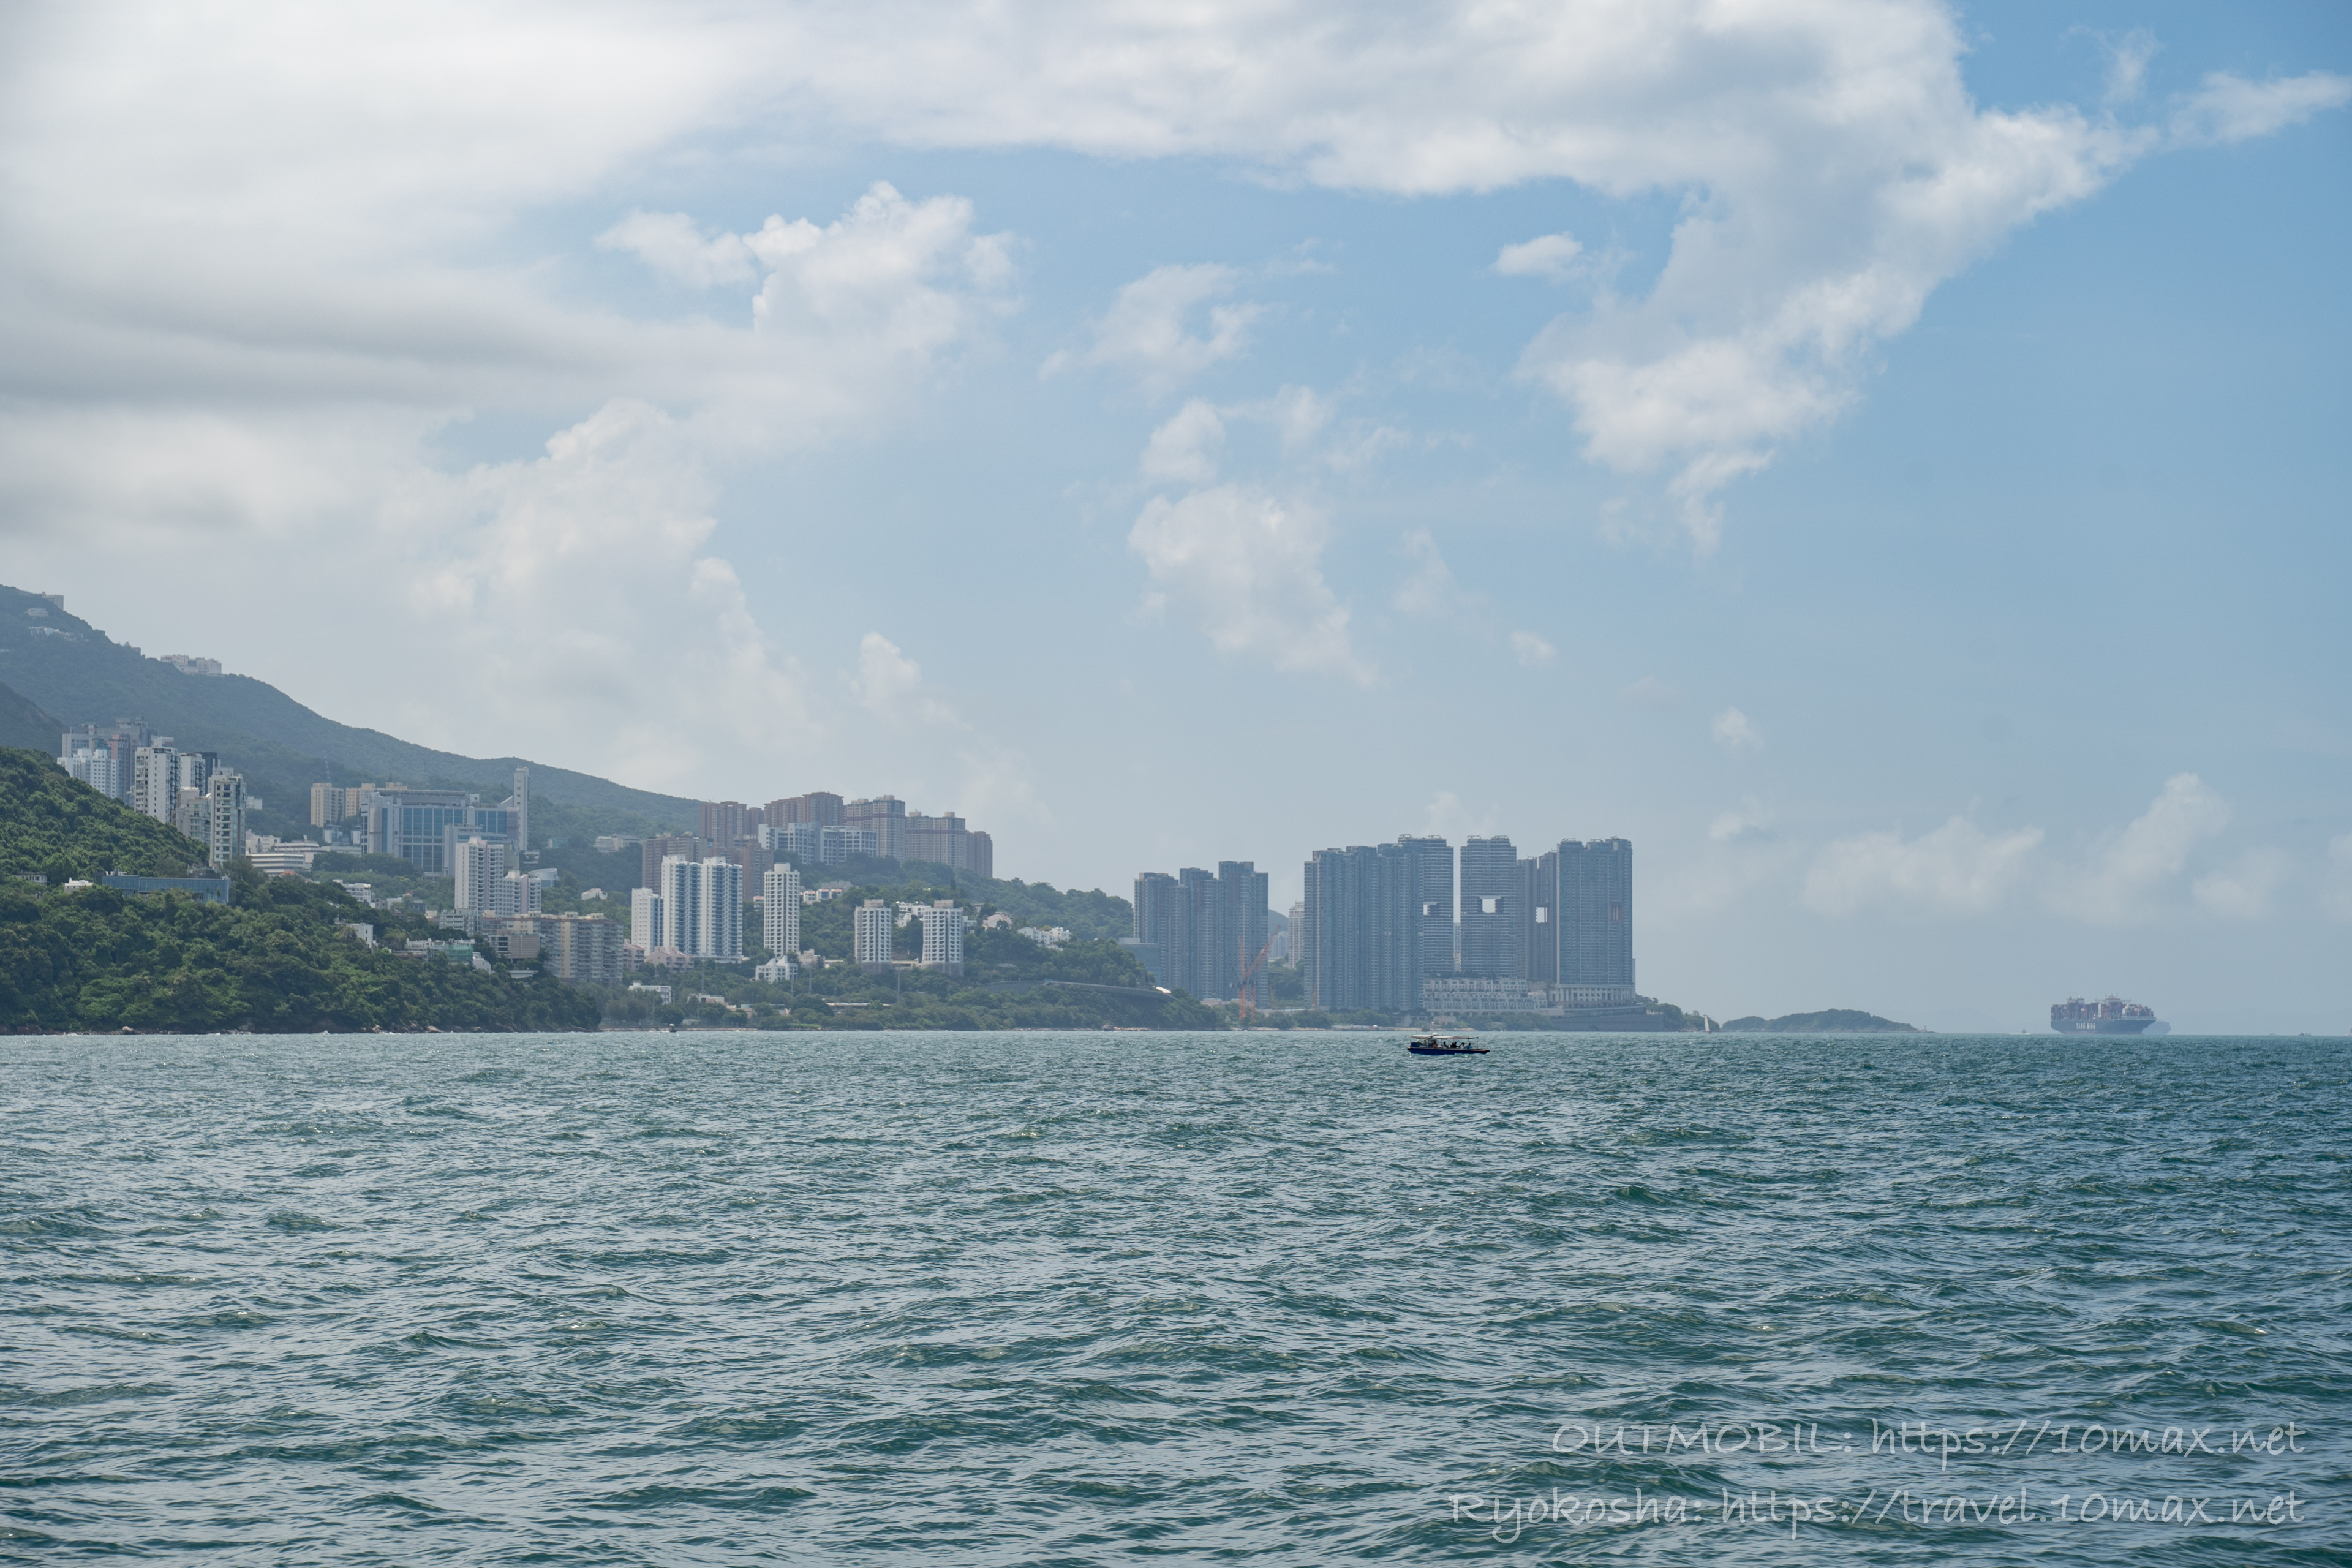 中環発長州島行きフェリーからの風景, 香港